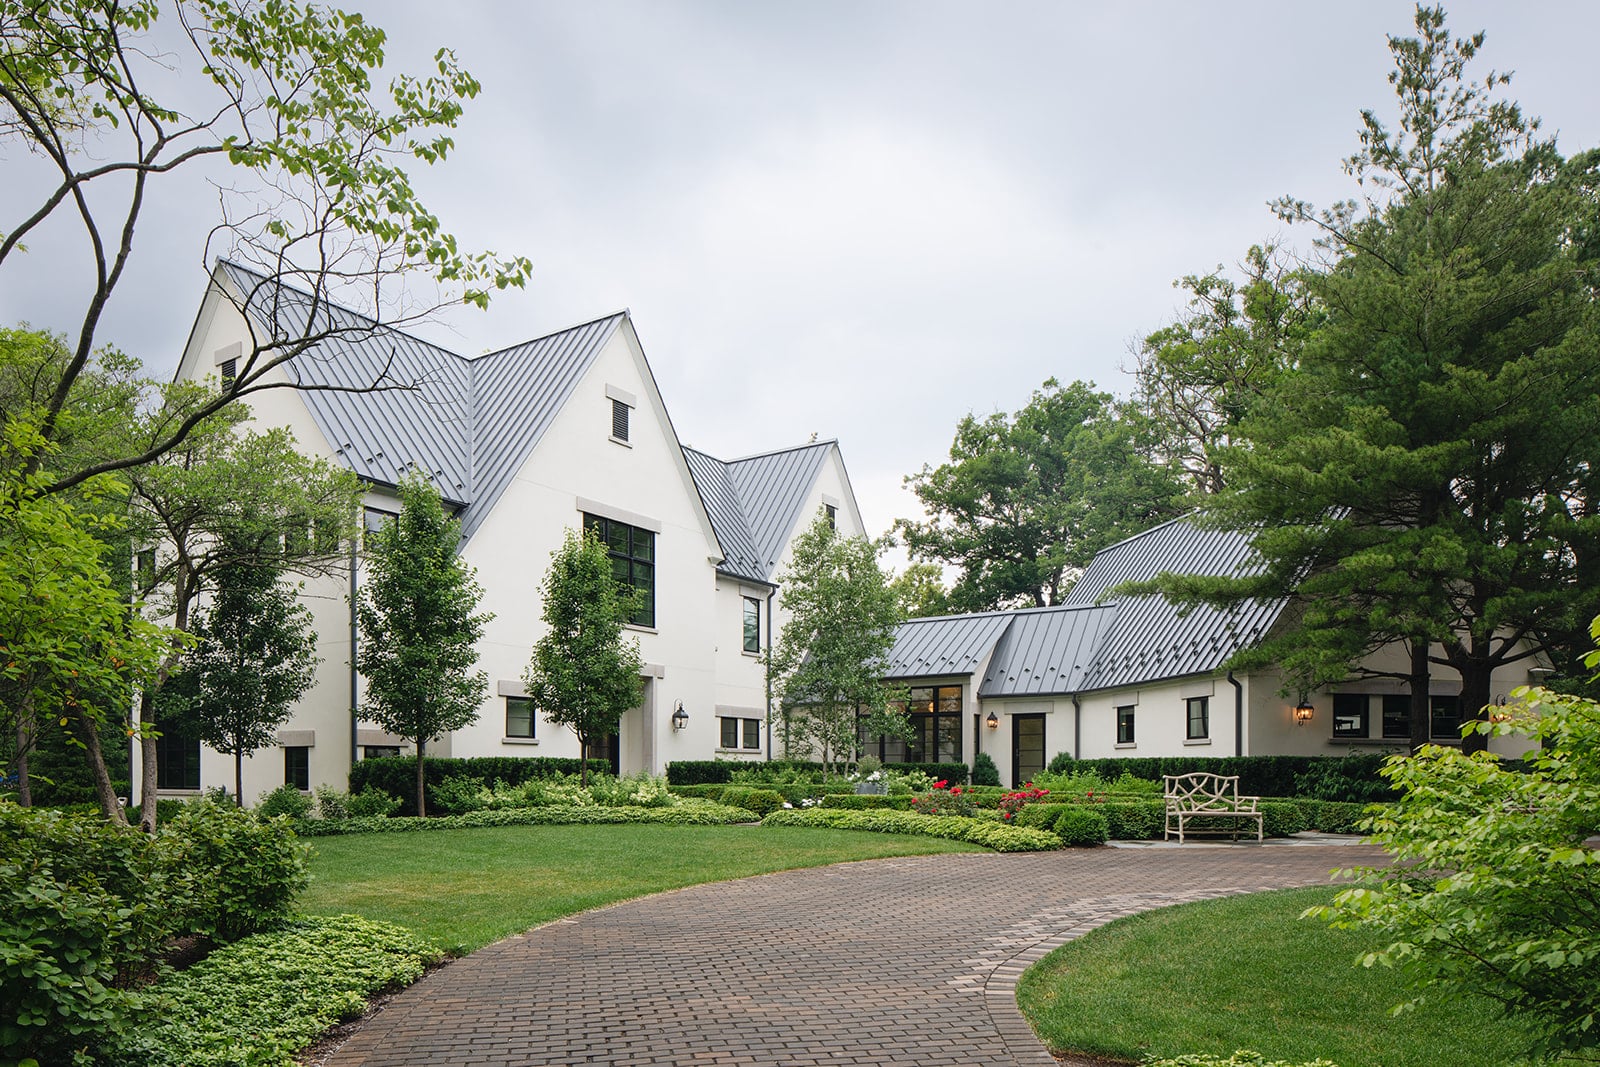 Modernized Tudor Homes